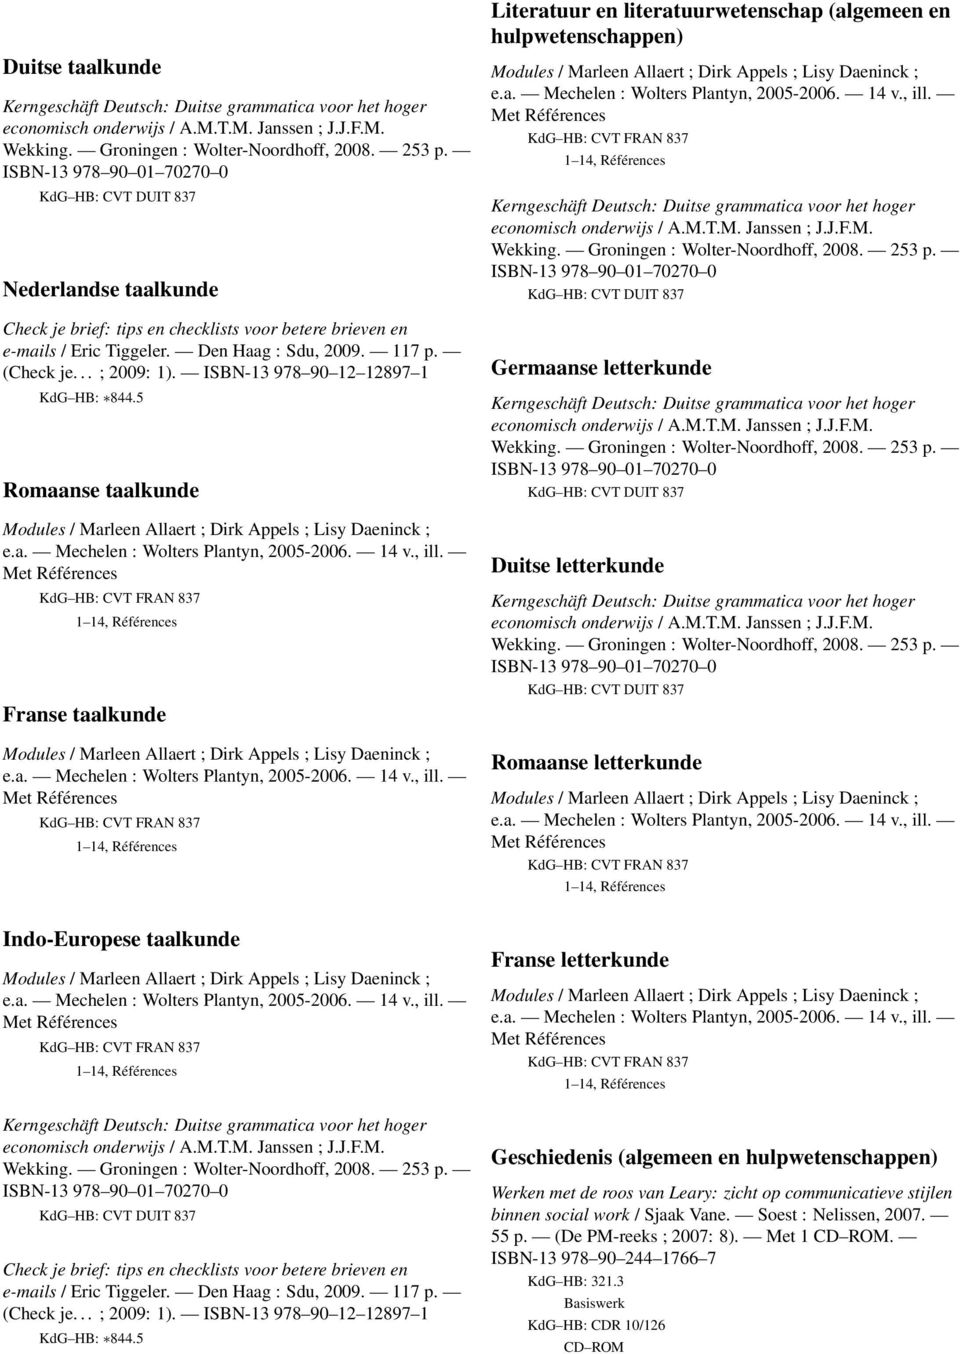 letterkunde Duitse letterkunde Romaanse letterkunde Indo-Europese taalkunde Franse